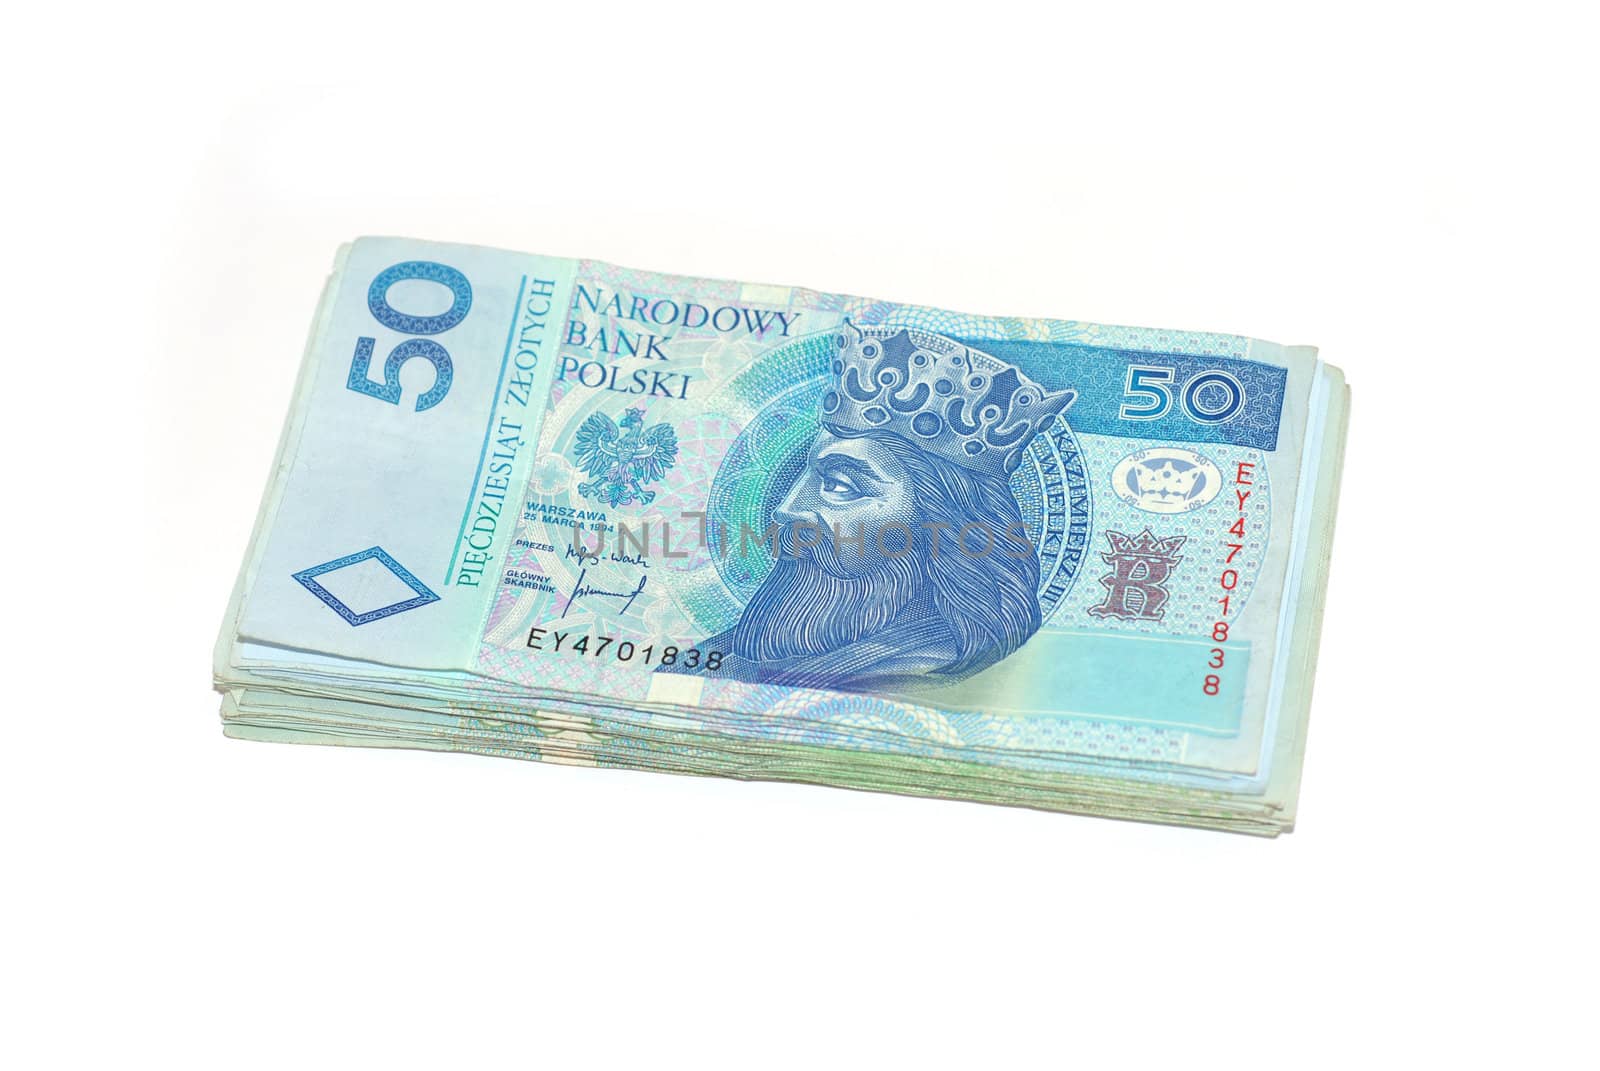 Banknotes 50 PLN. Polish currency. Banknoty 50 zlotowe. Polska waluta. by wojciechkozlowski